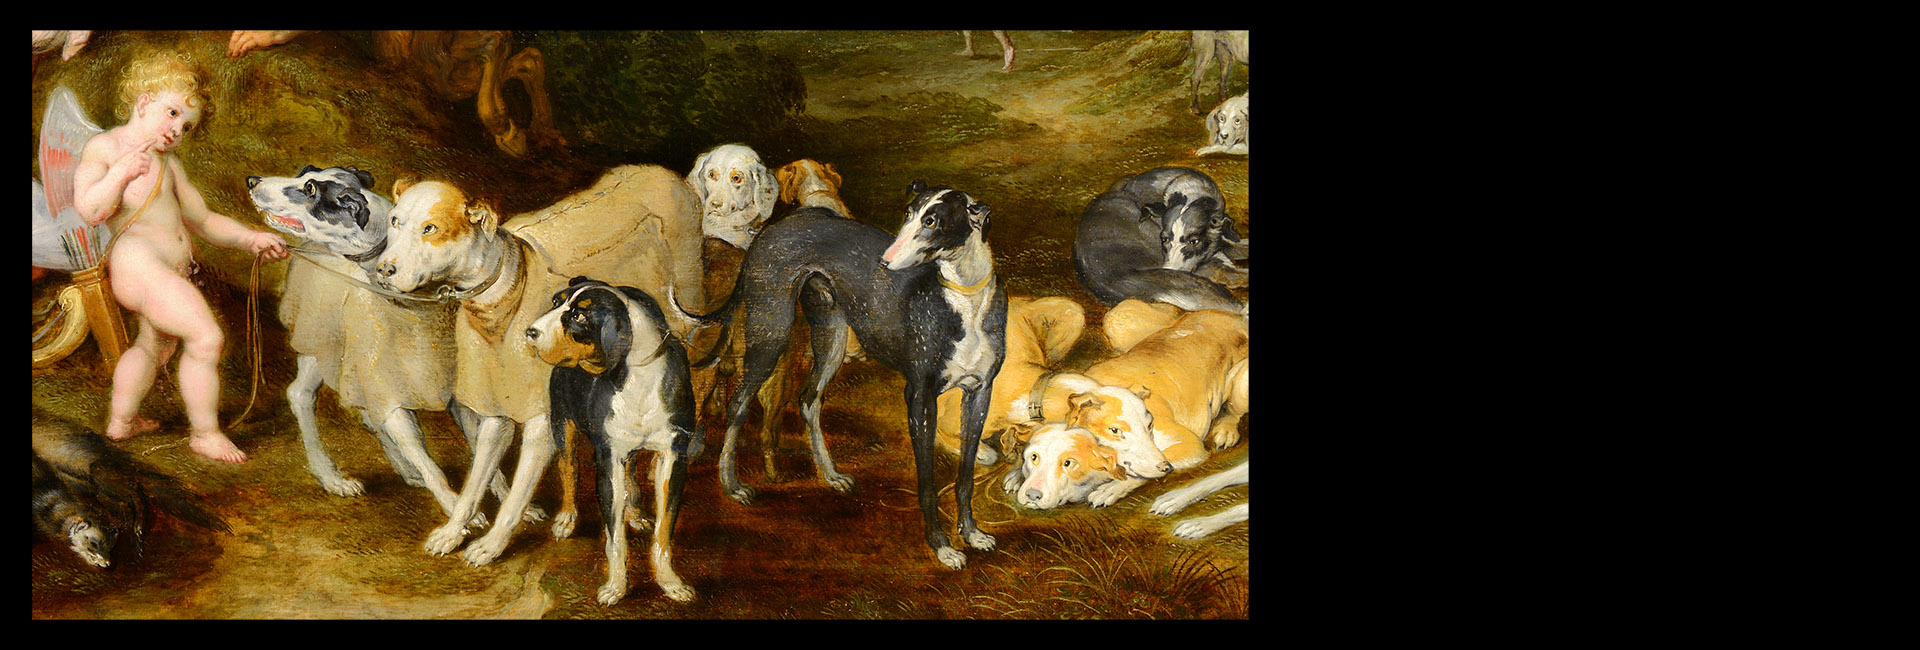 Jan II. Brueghel (1601-1678) [SCHLAFENDE DIANA UND NYMPHEN]